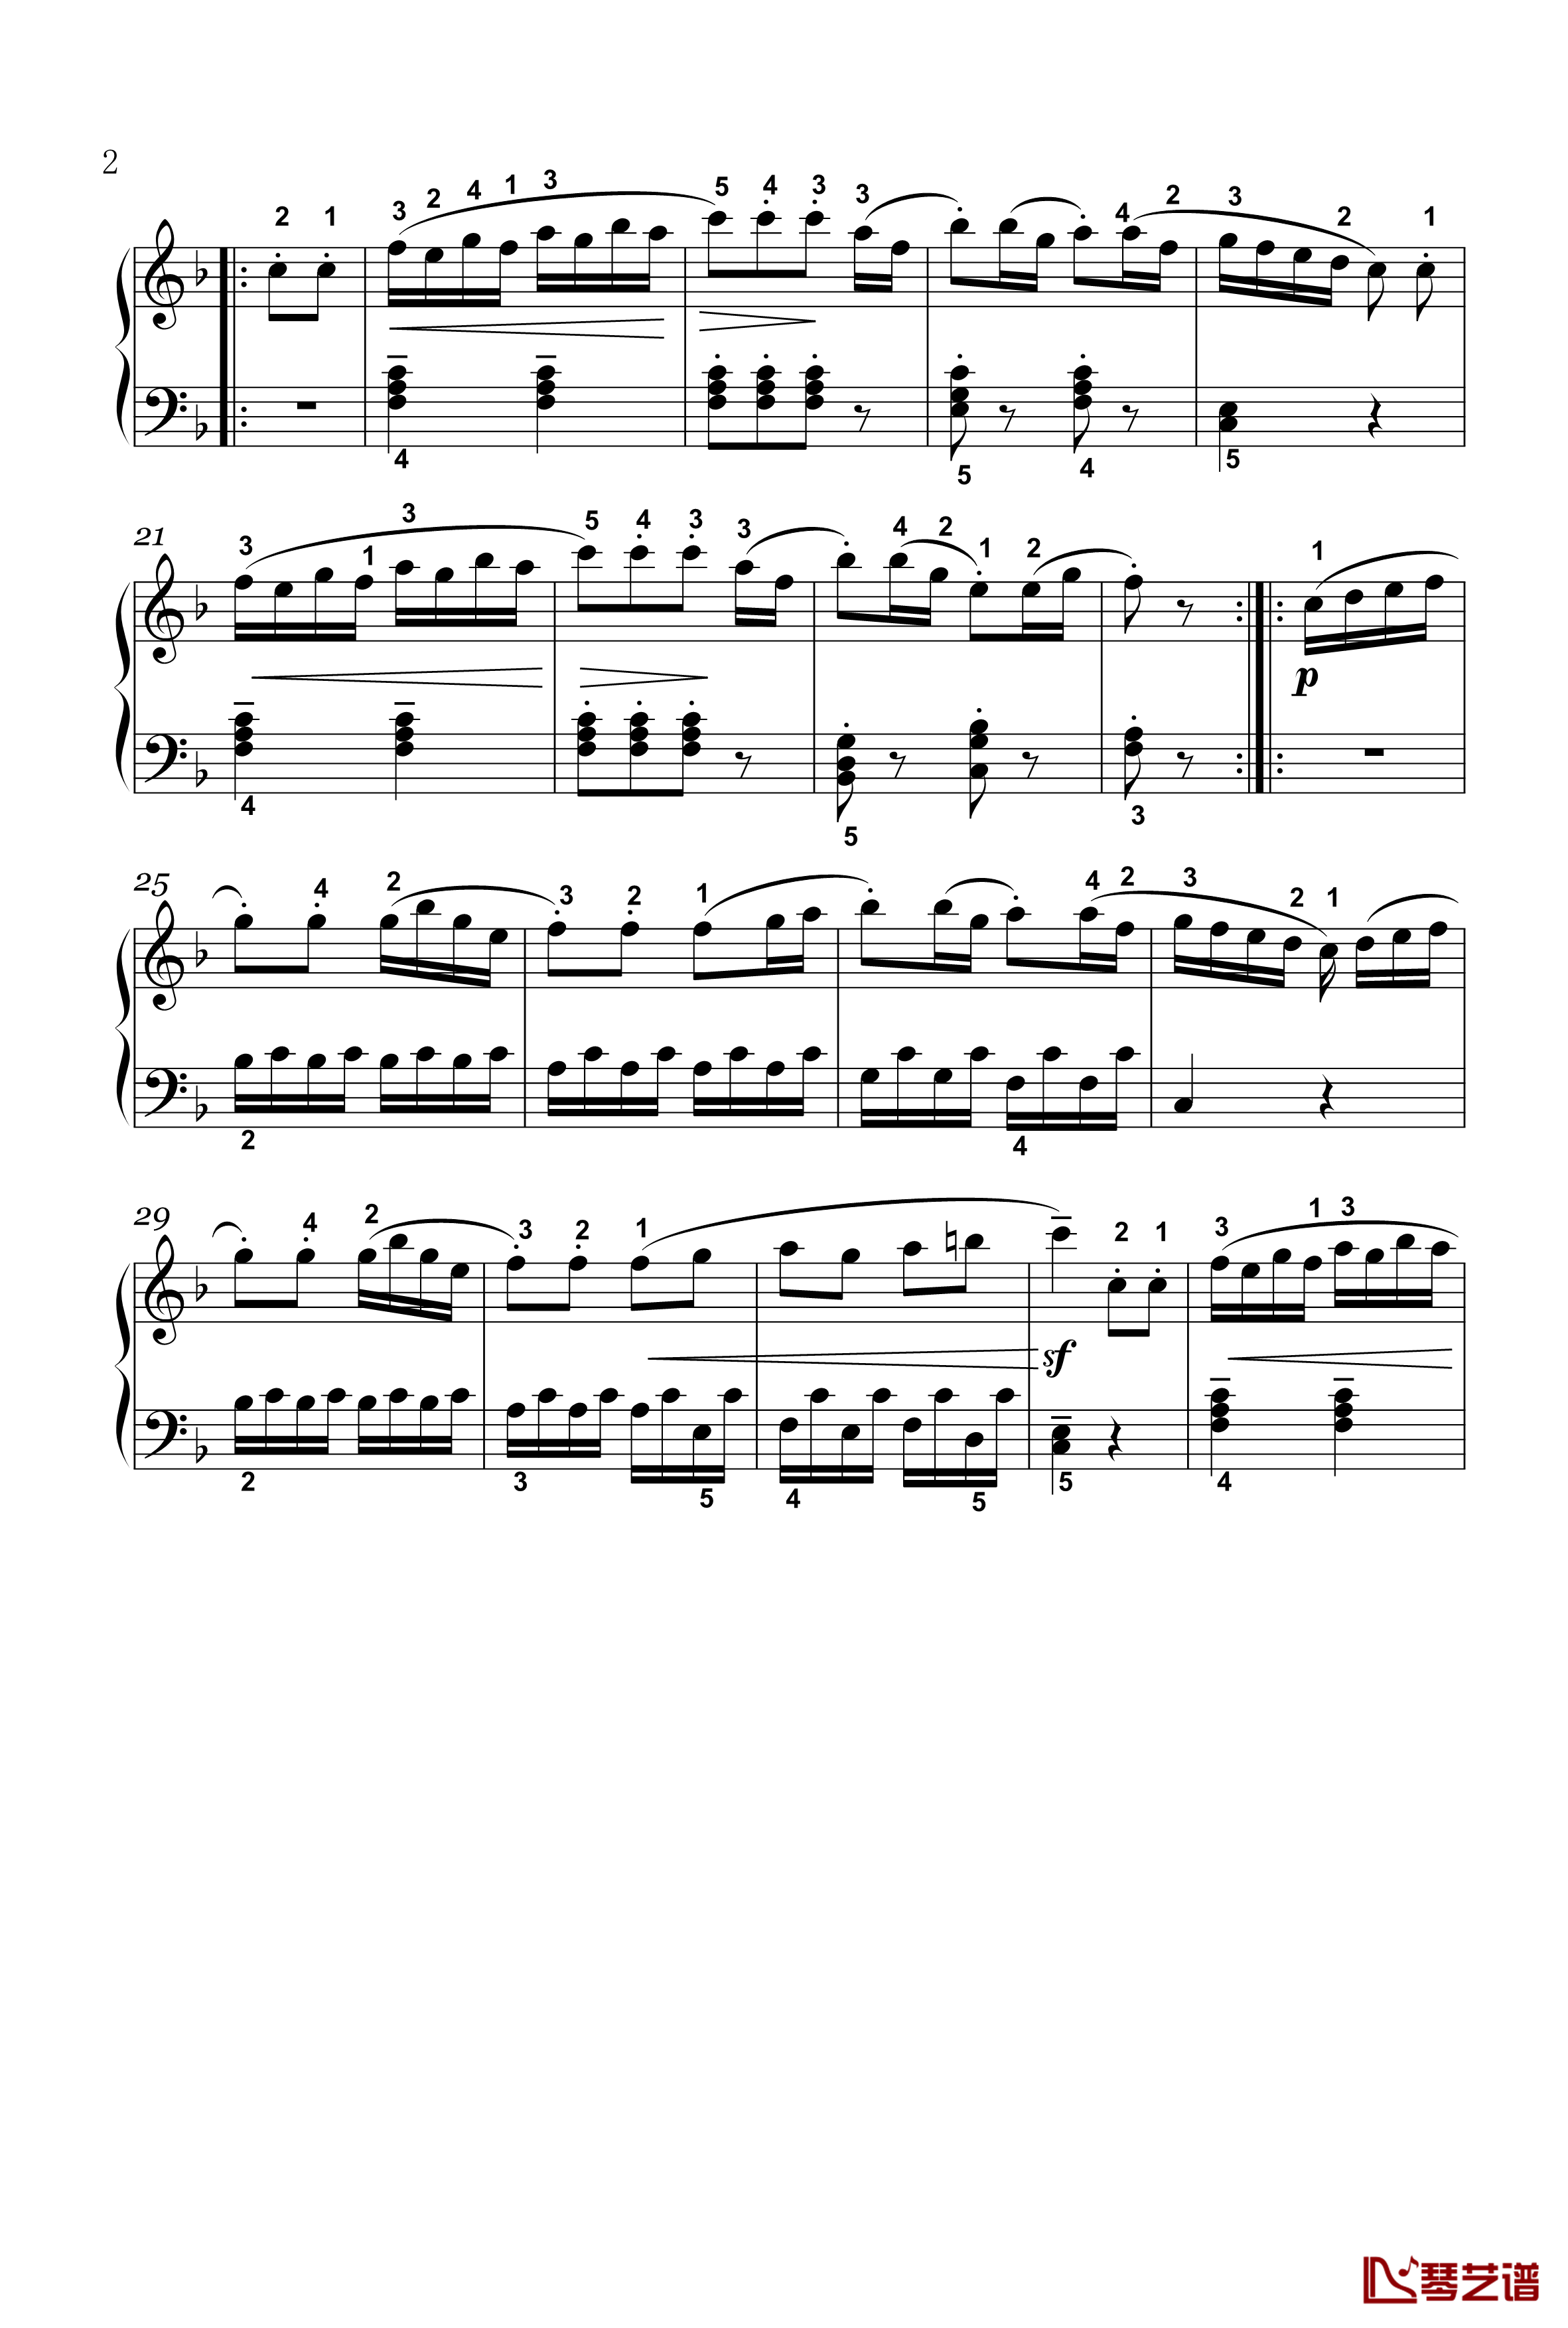 回旋曲钢琴谱-四级-普莱耶尔2